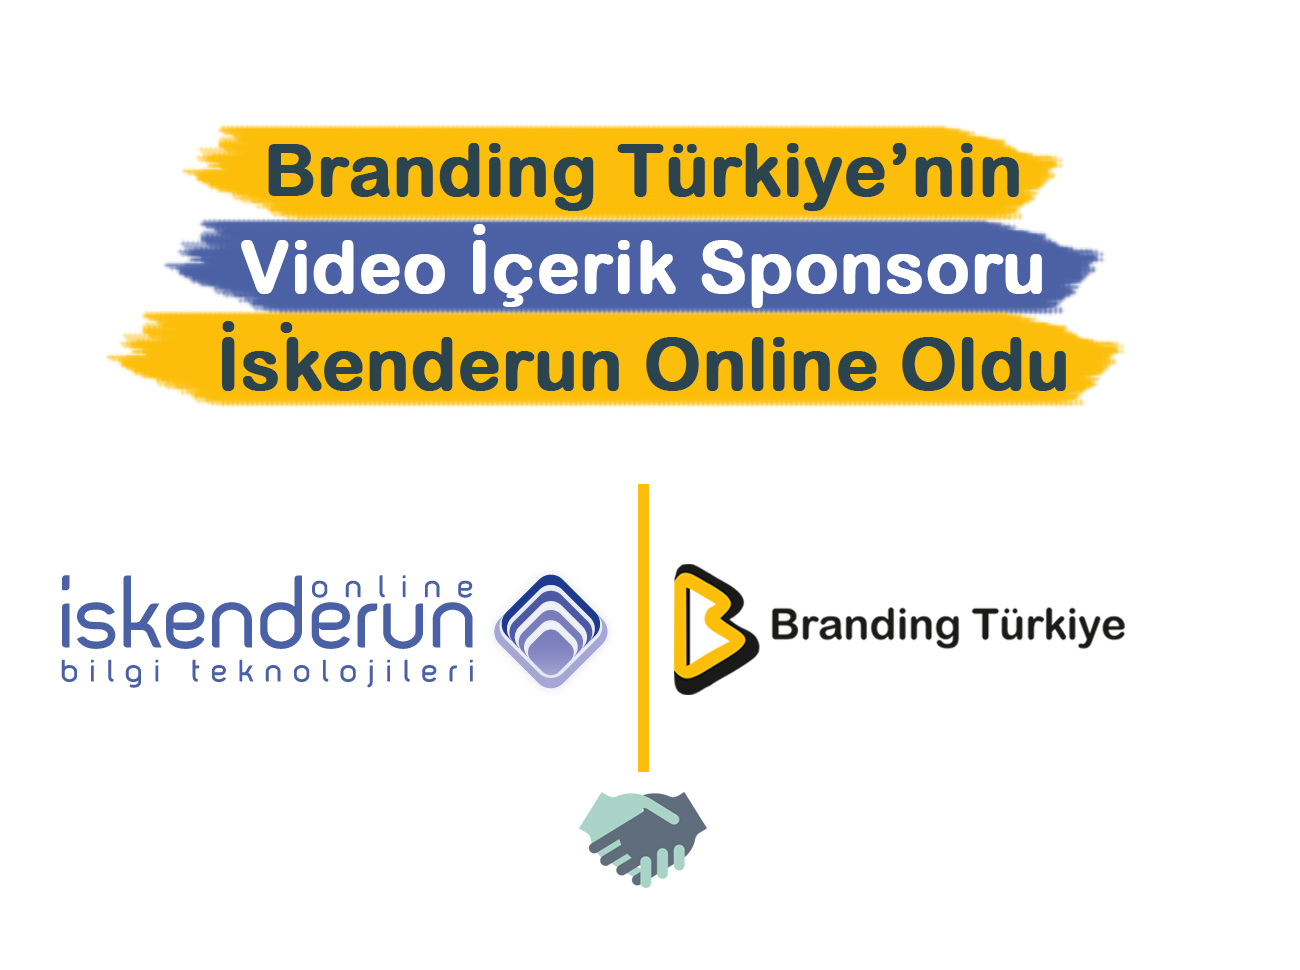 Branding Türkiye’nin Video İçerik Sponsoru İskenderun Online Oldu